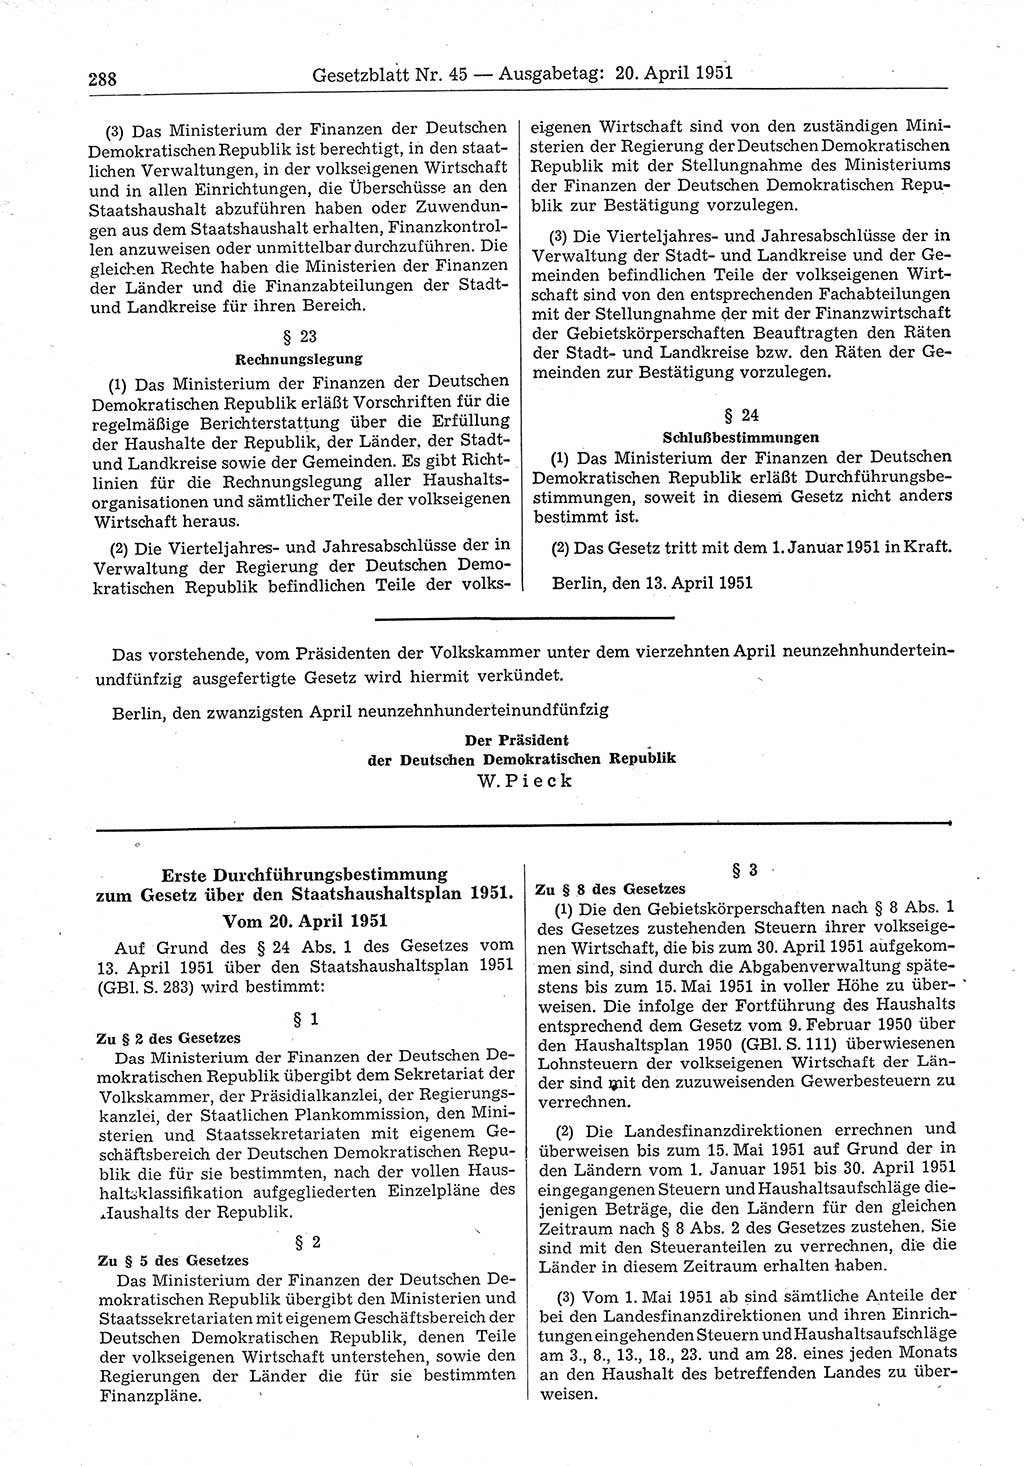 Gesetzblatt (GBl.) der Deutschen Demokratischen Republik (DDR) 1951, Seite 288 (GBl. DDR 1951, S. 288)